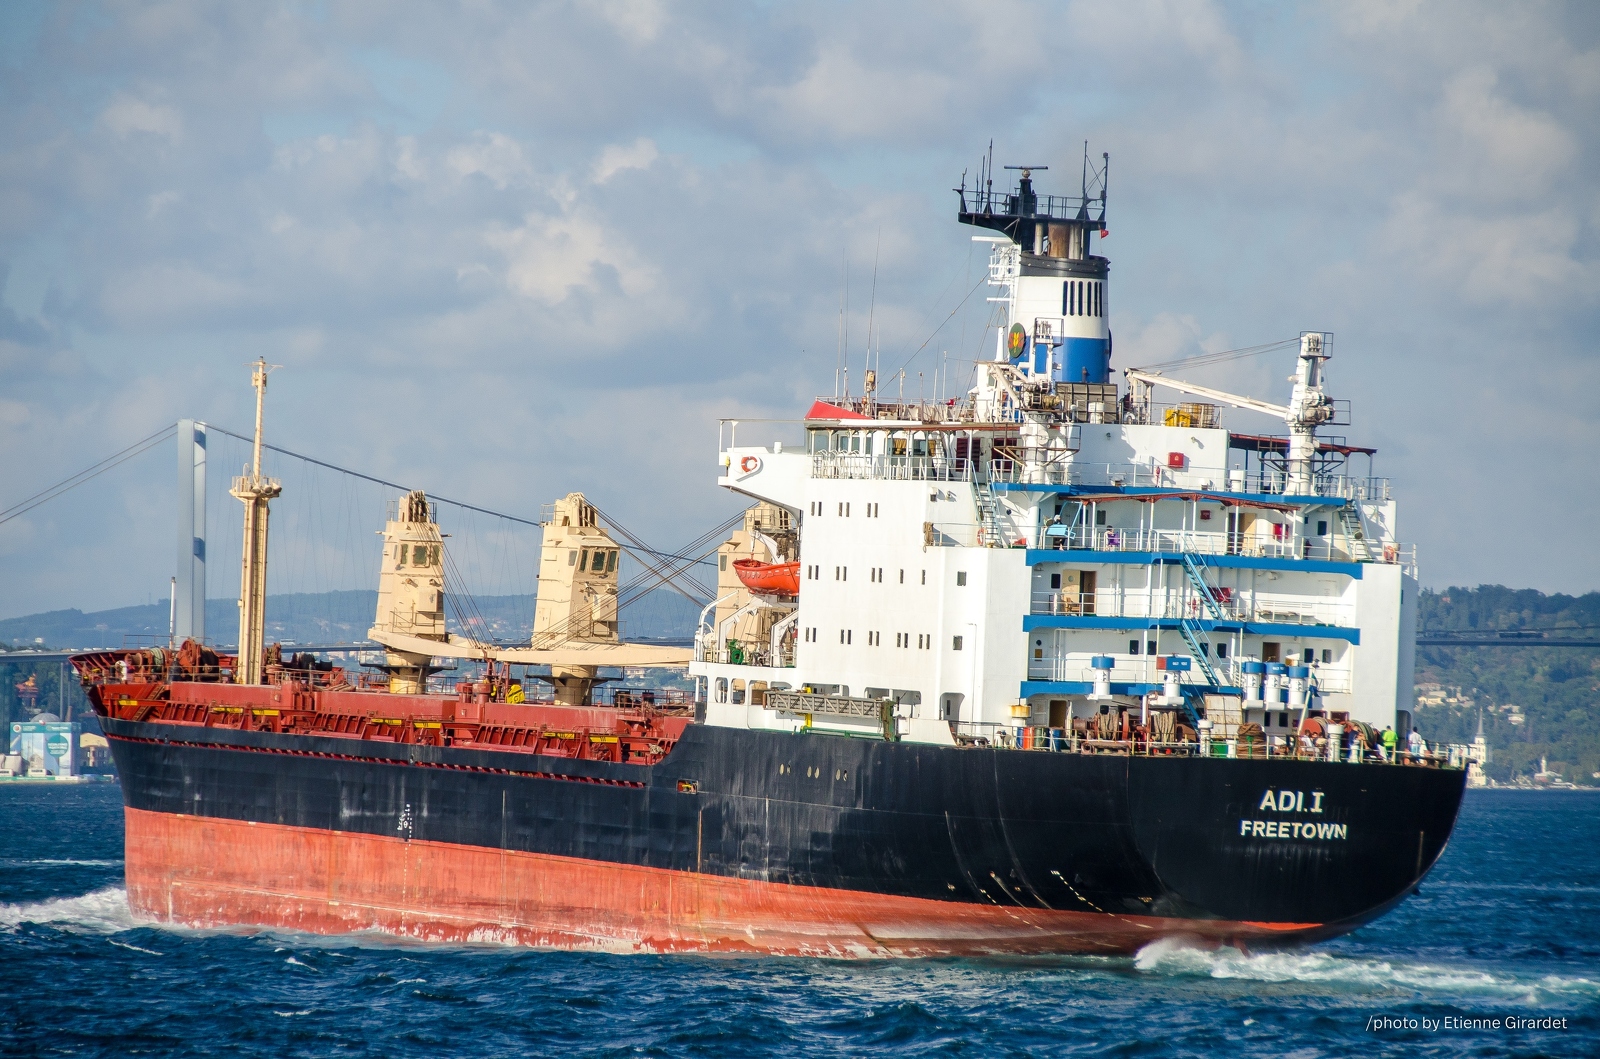 201209_02_DSC_2478-boat-oil-tanker-bosporus-by-E-Girardet.jpg